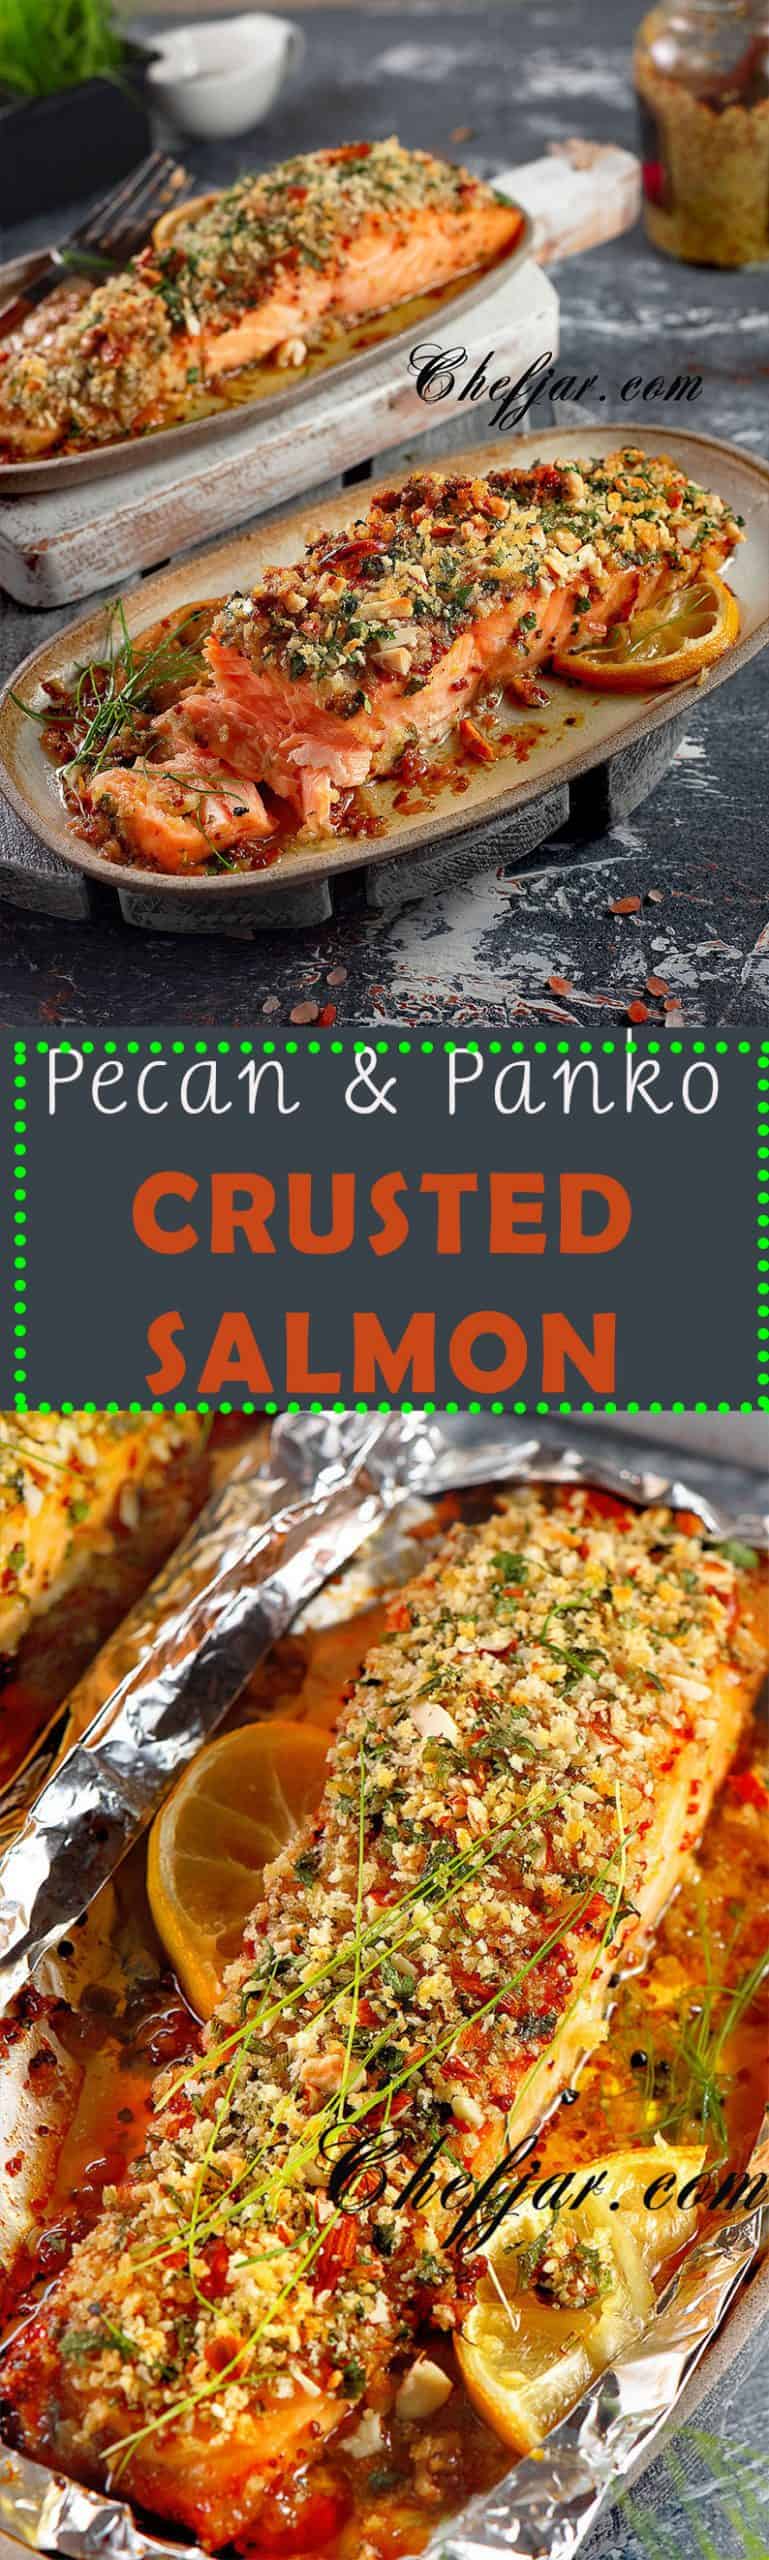 crusted-salmon